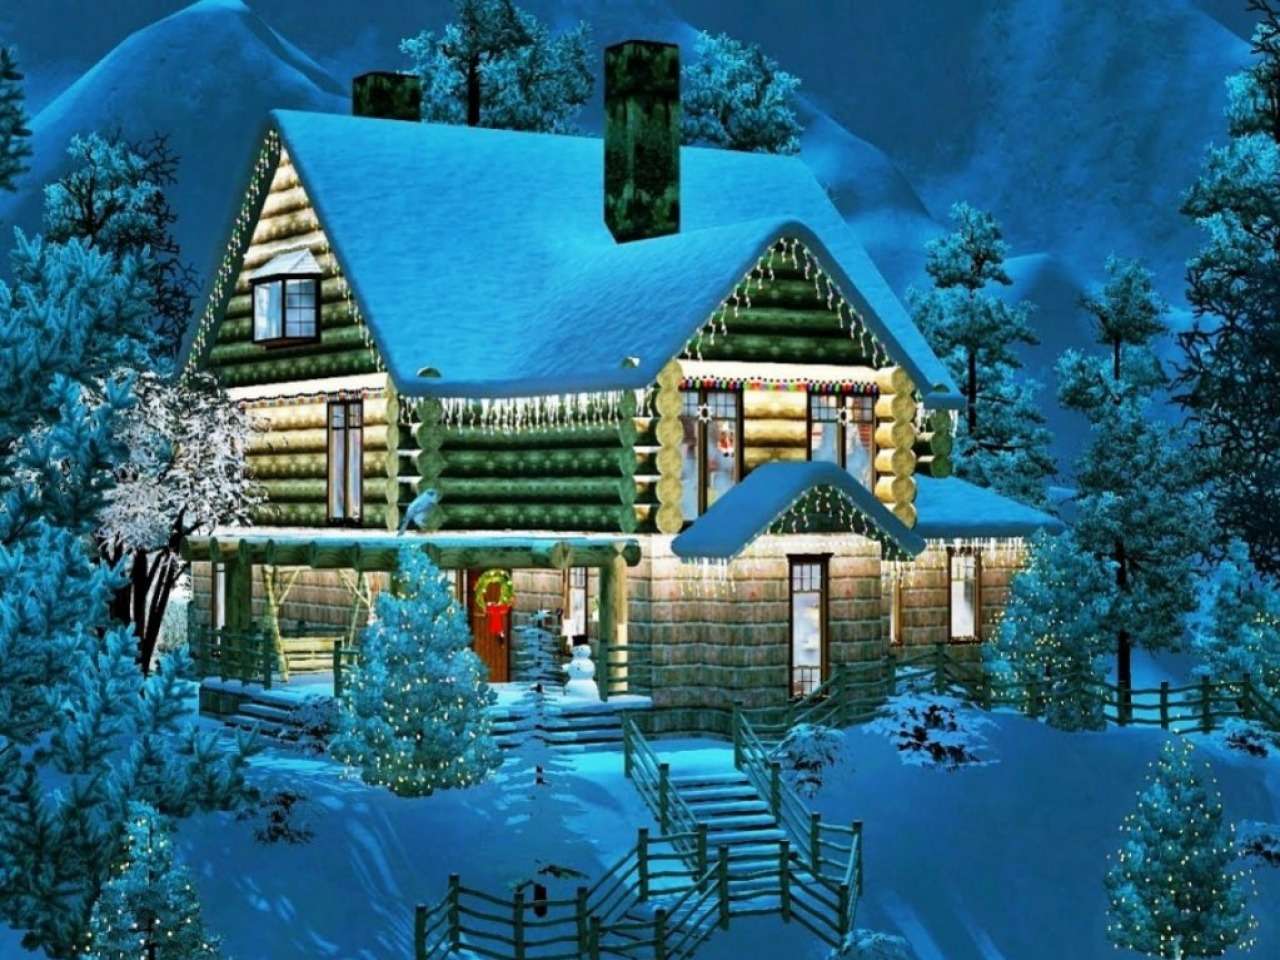 Лятна къща, красиво декорирана през зимата :) онлайн пъзел